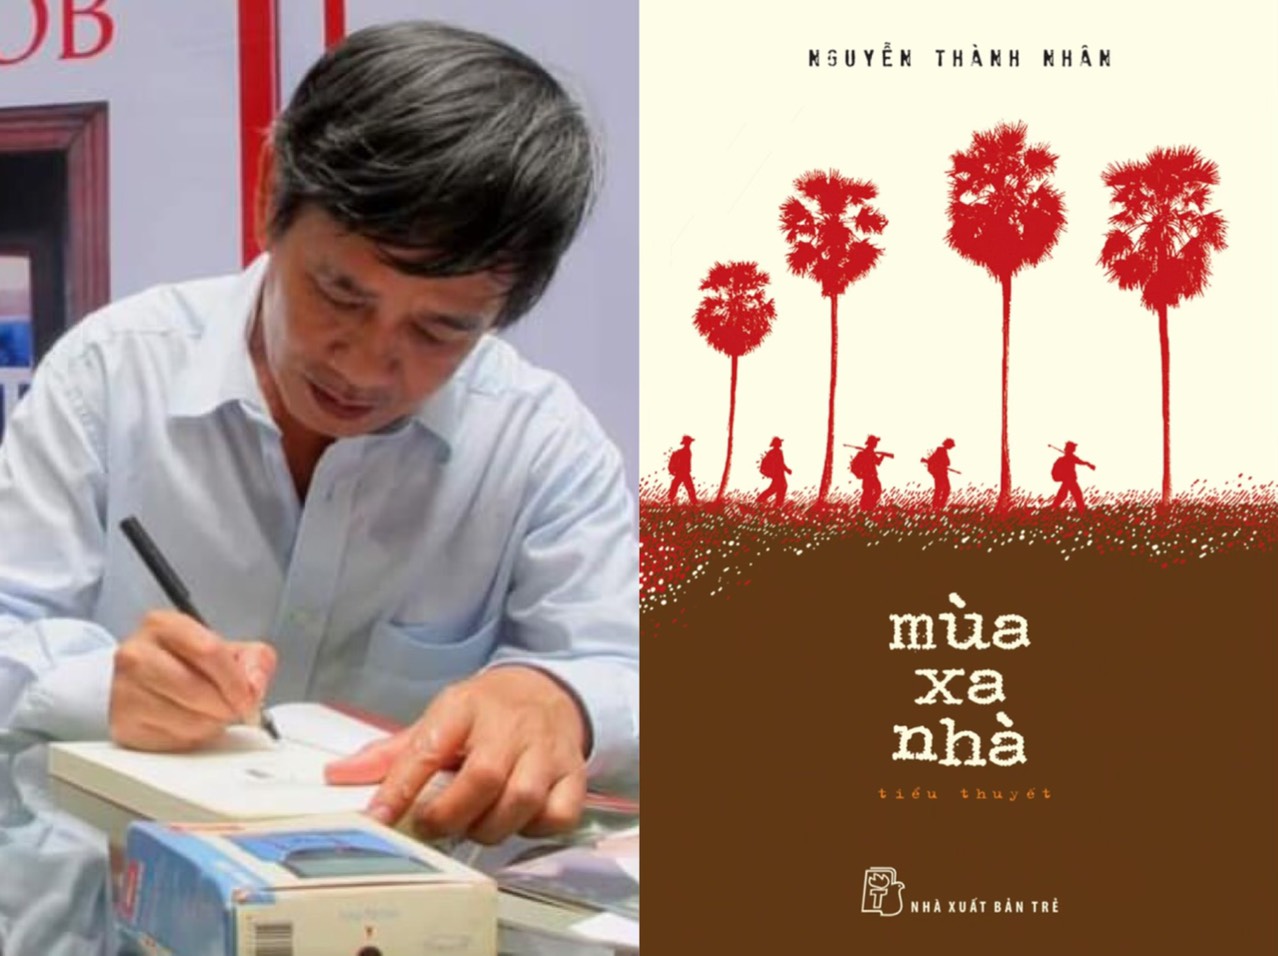 Nhà văn-dịch giả Nguyễn Thành Nhân, một người hiền của văn chương